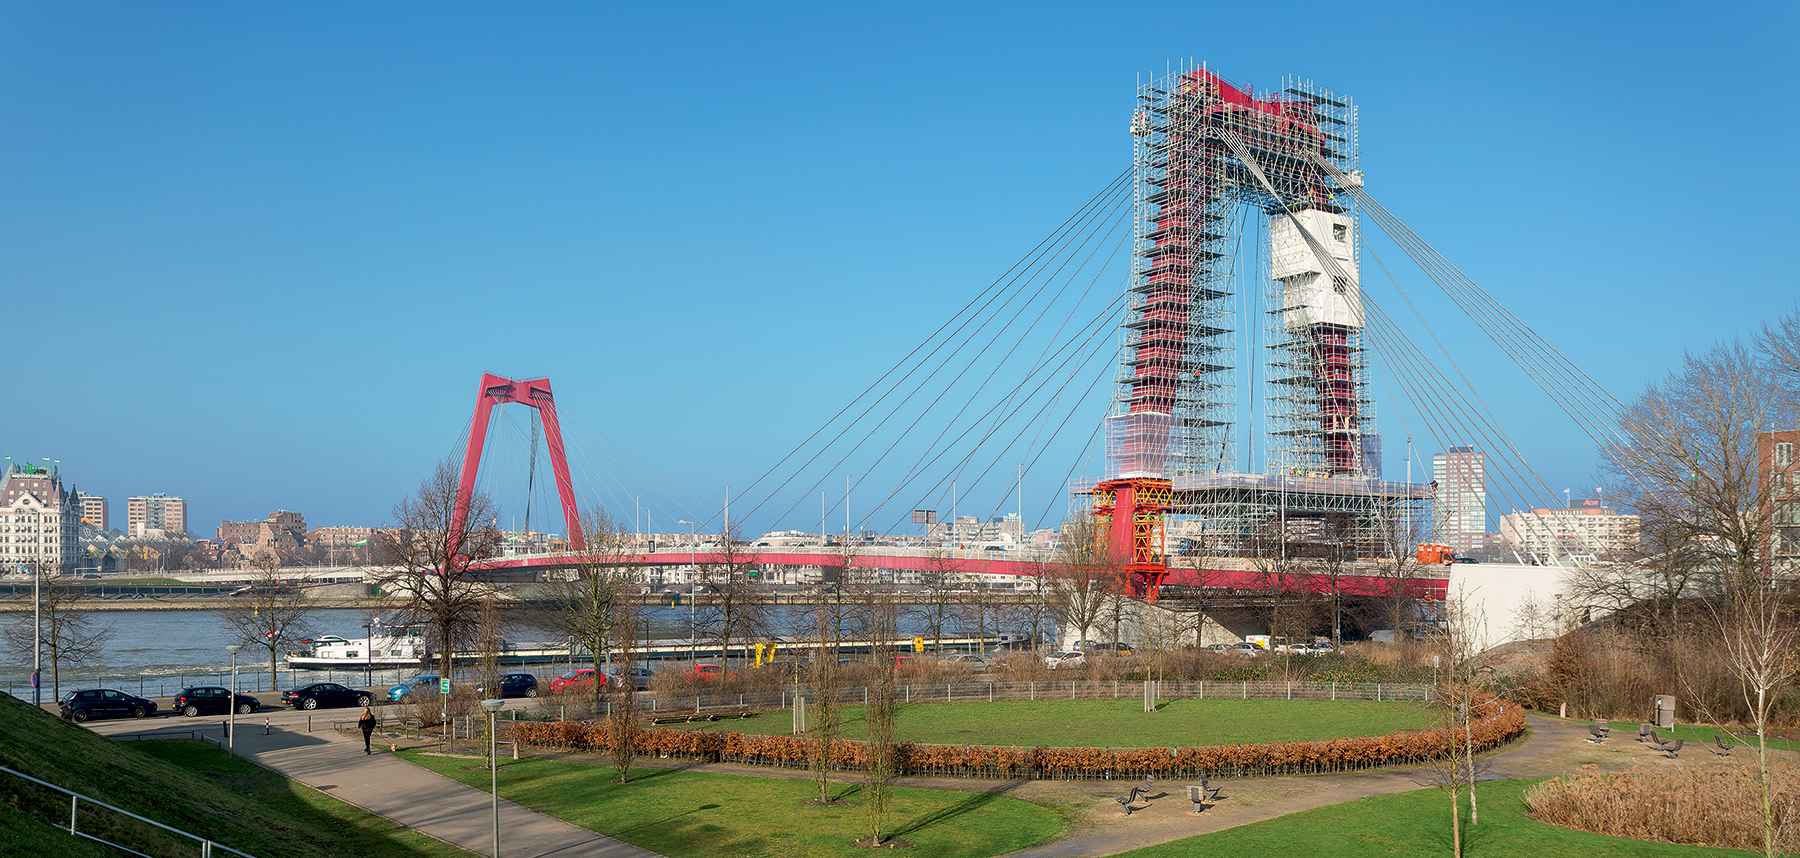 Sanovaný most Willem je důležitým spojením severní a jižní části města Rotterdam. Neomezený a bezpečný provoz na mostě musel být proto zajištěn i během montáže lešení a sanačních prací.